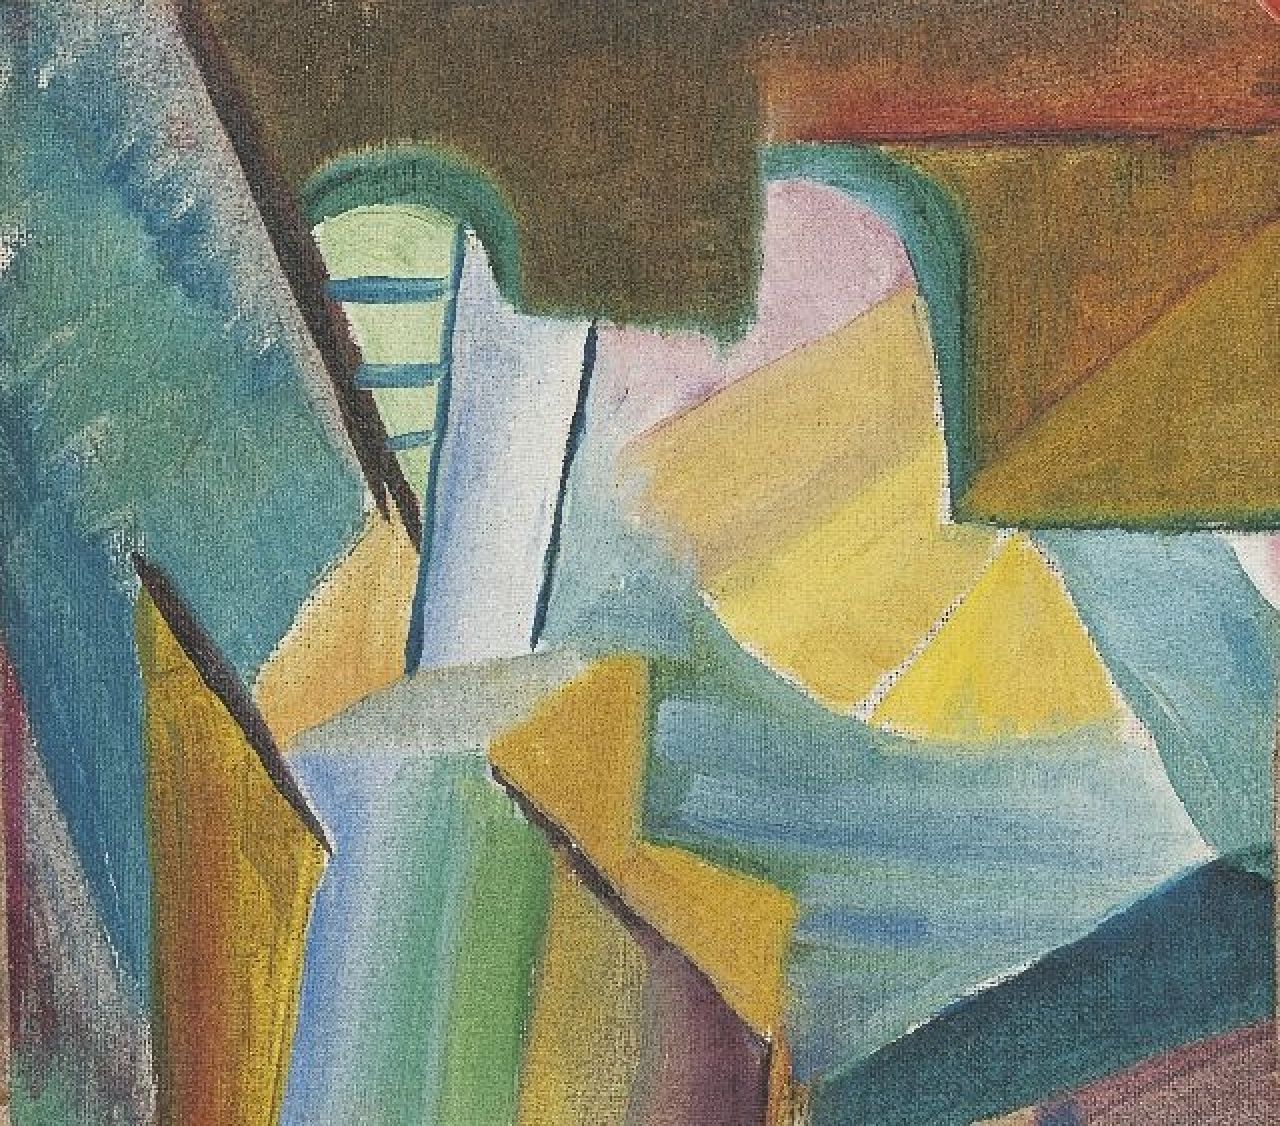 Freundlich O.  | Otto Freundlich, Komposition, Öl auf Leinwand 16,4 x 18,7 cm, zu datieren 1928